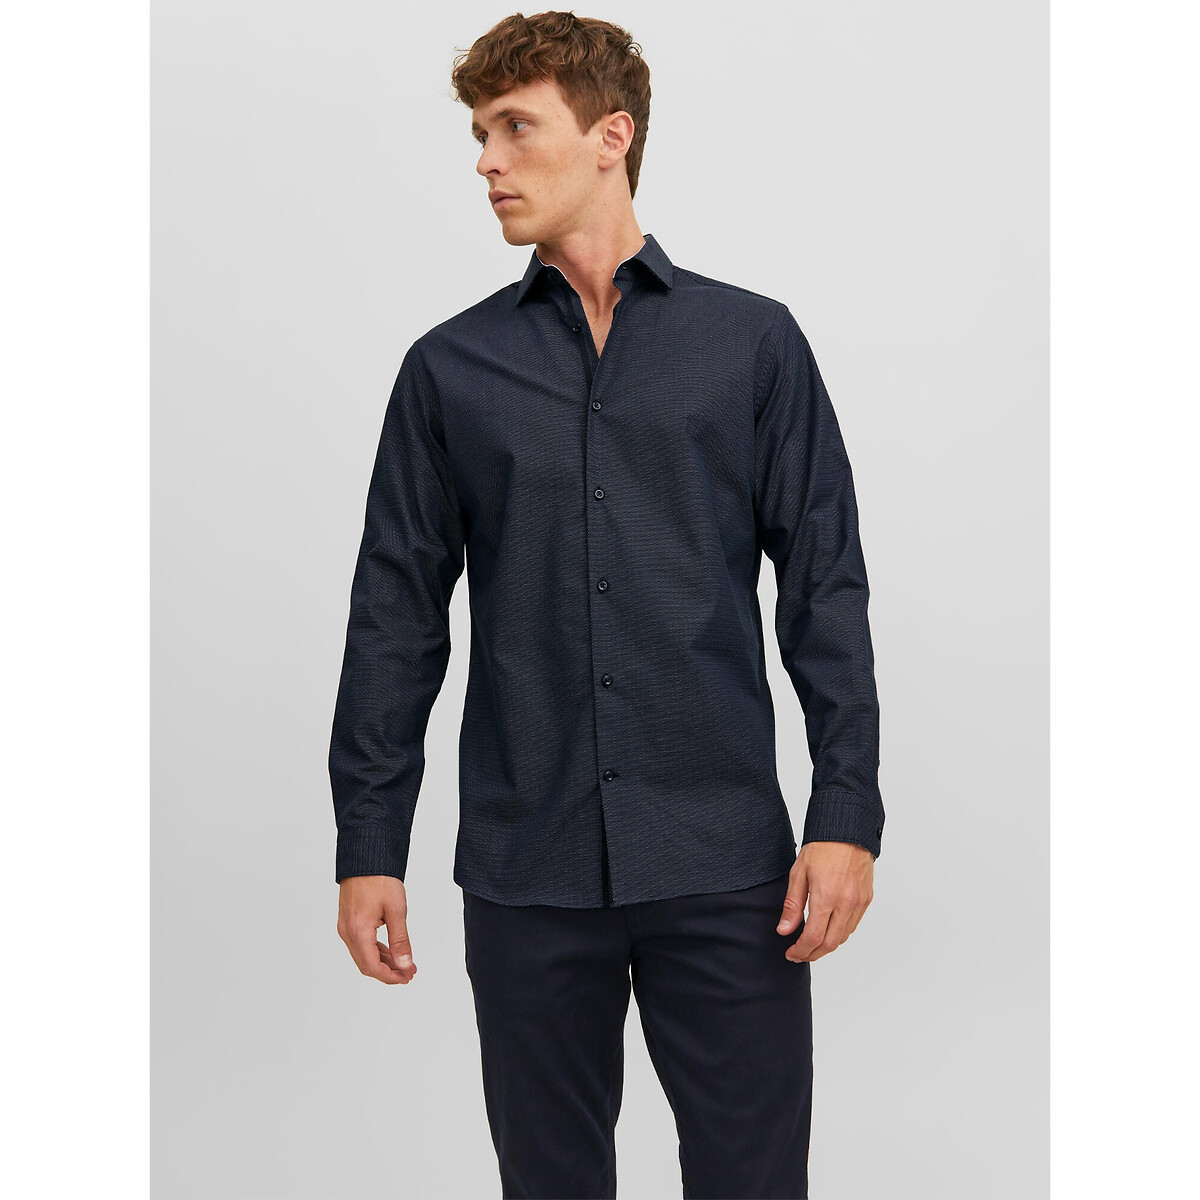 Рубашка Слим из ткани стрейч XL синий LaRedoute, размер XL - фото 1